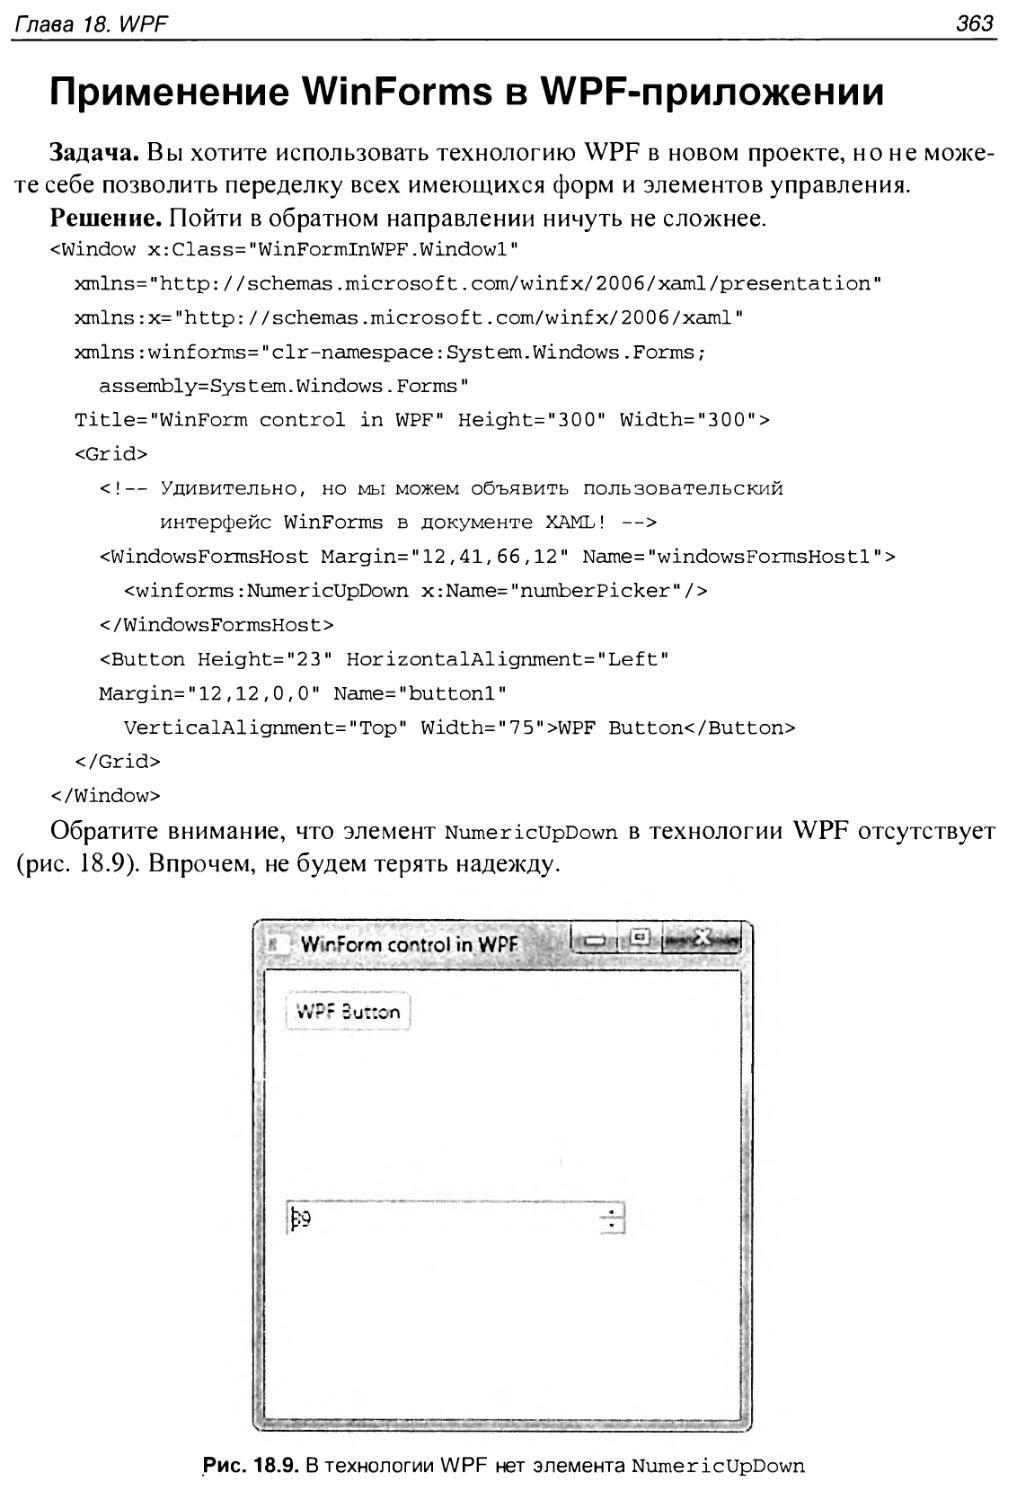 Применение WinForms в WPF-приложении